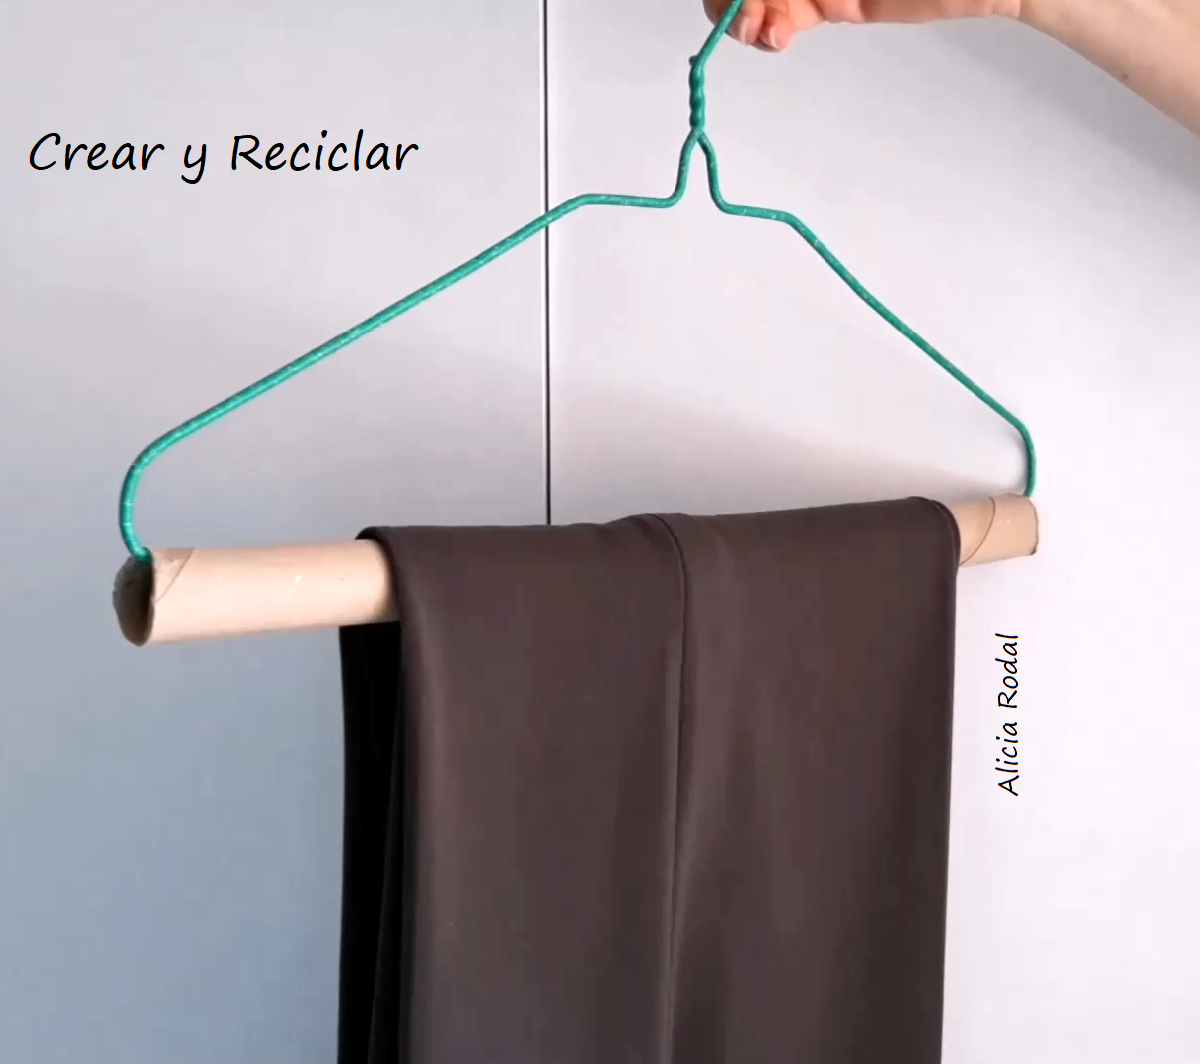 8 trucos e ideas con tubos de cartón - Crear y Reciclar